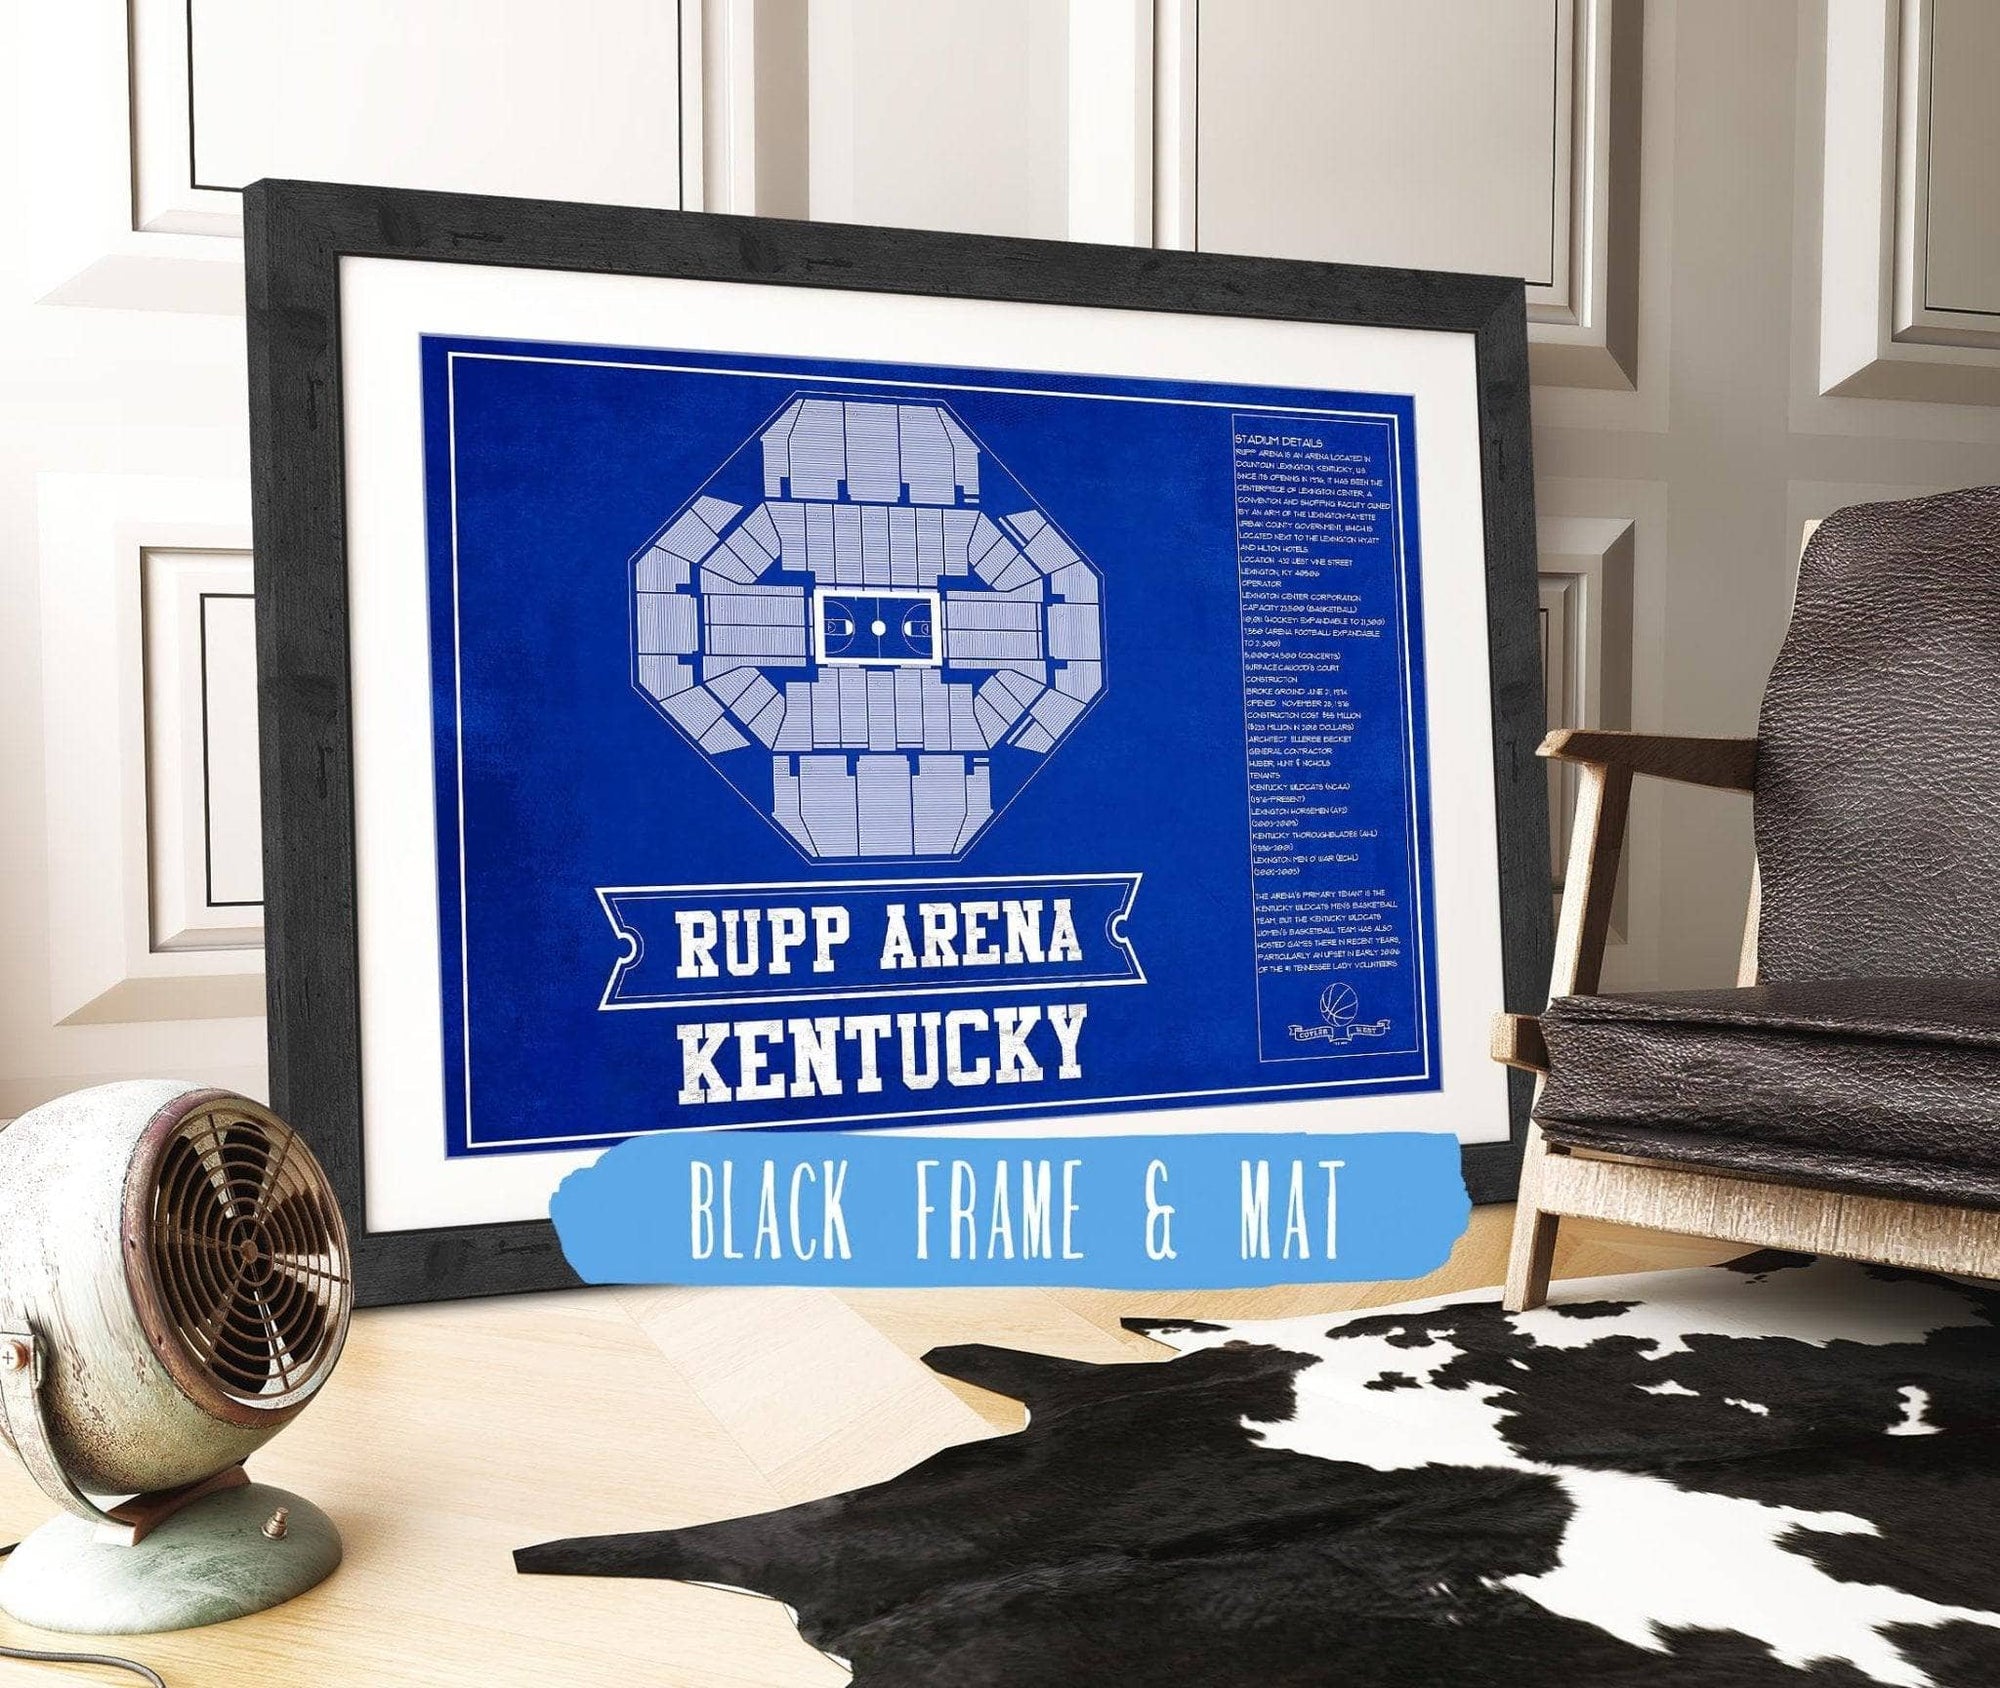 Cutler West Basketball Collection 14" x 11" / Black Frame & Mat Kentucky Wildcats - Rupp Arena Seating Chart - College Basketball Blueprint Team Color Art 662071190-TEAM83824